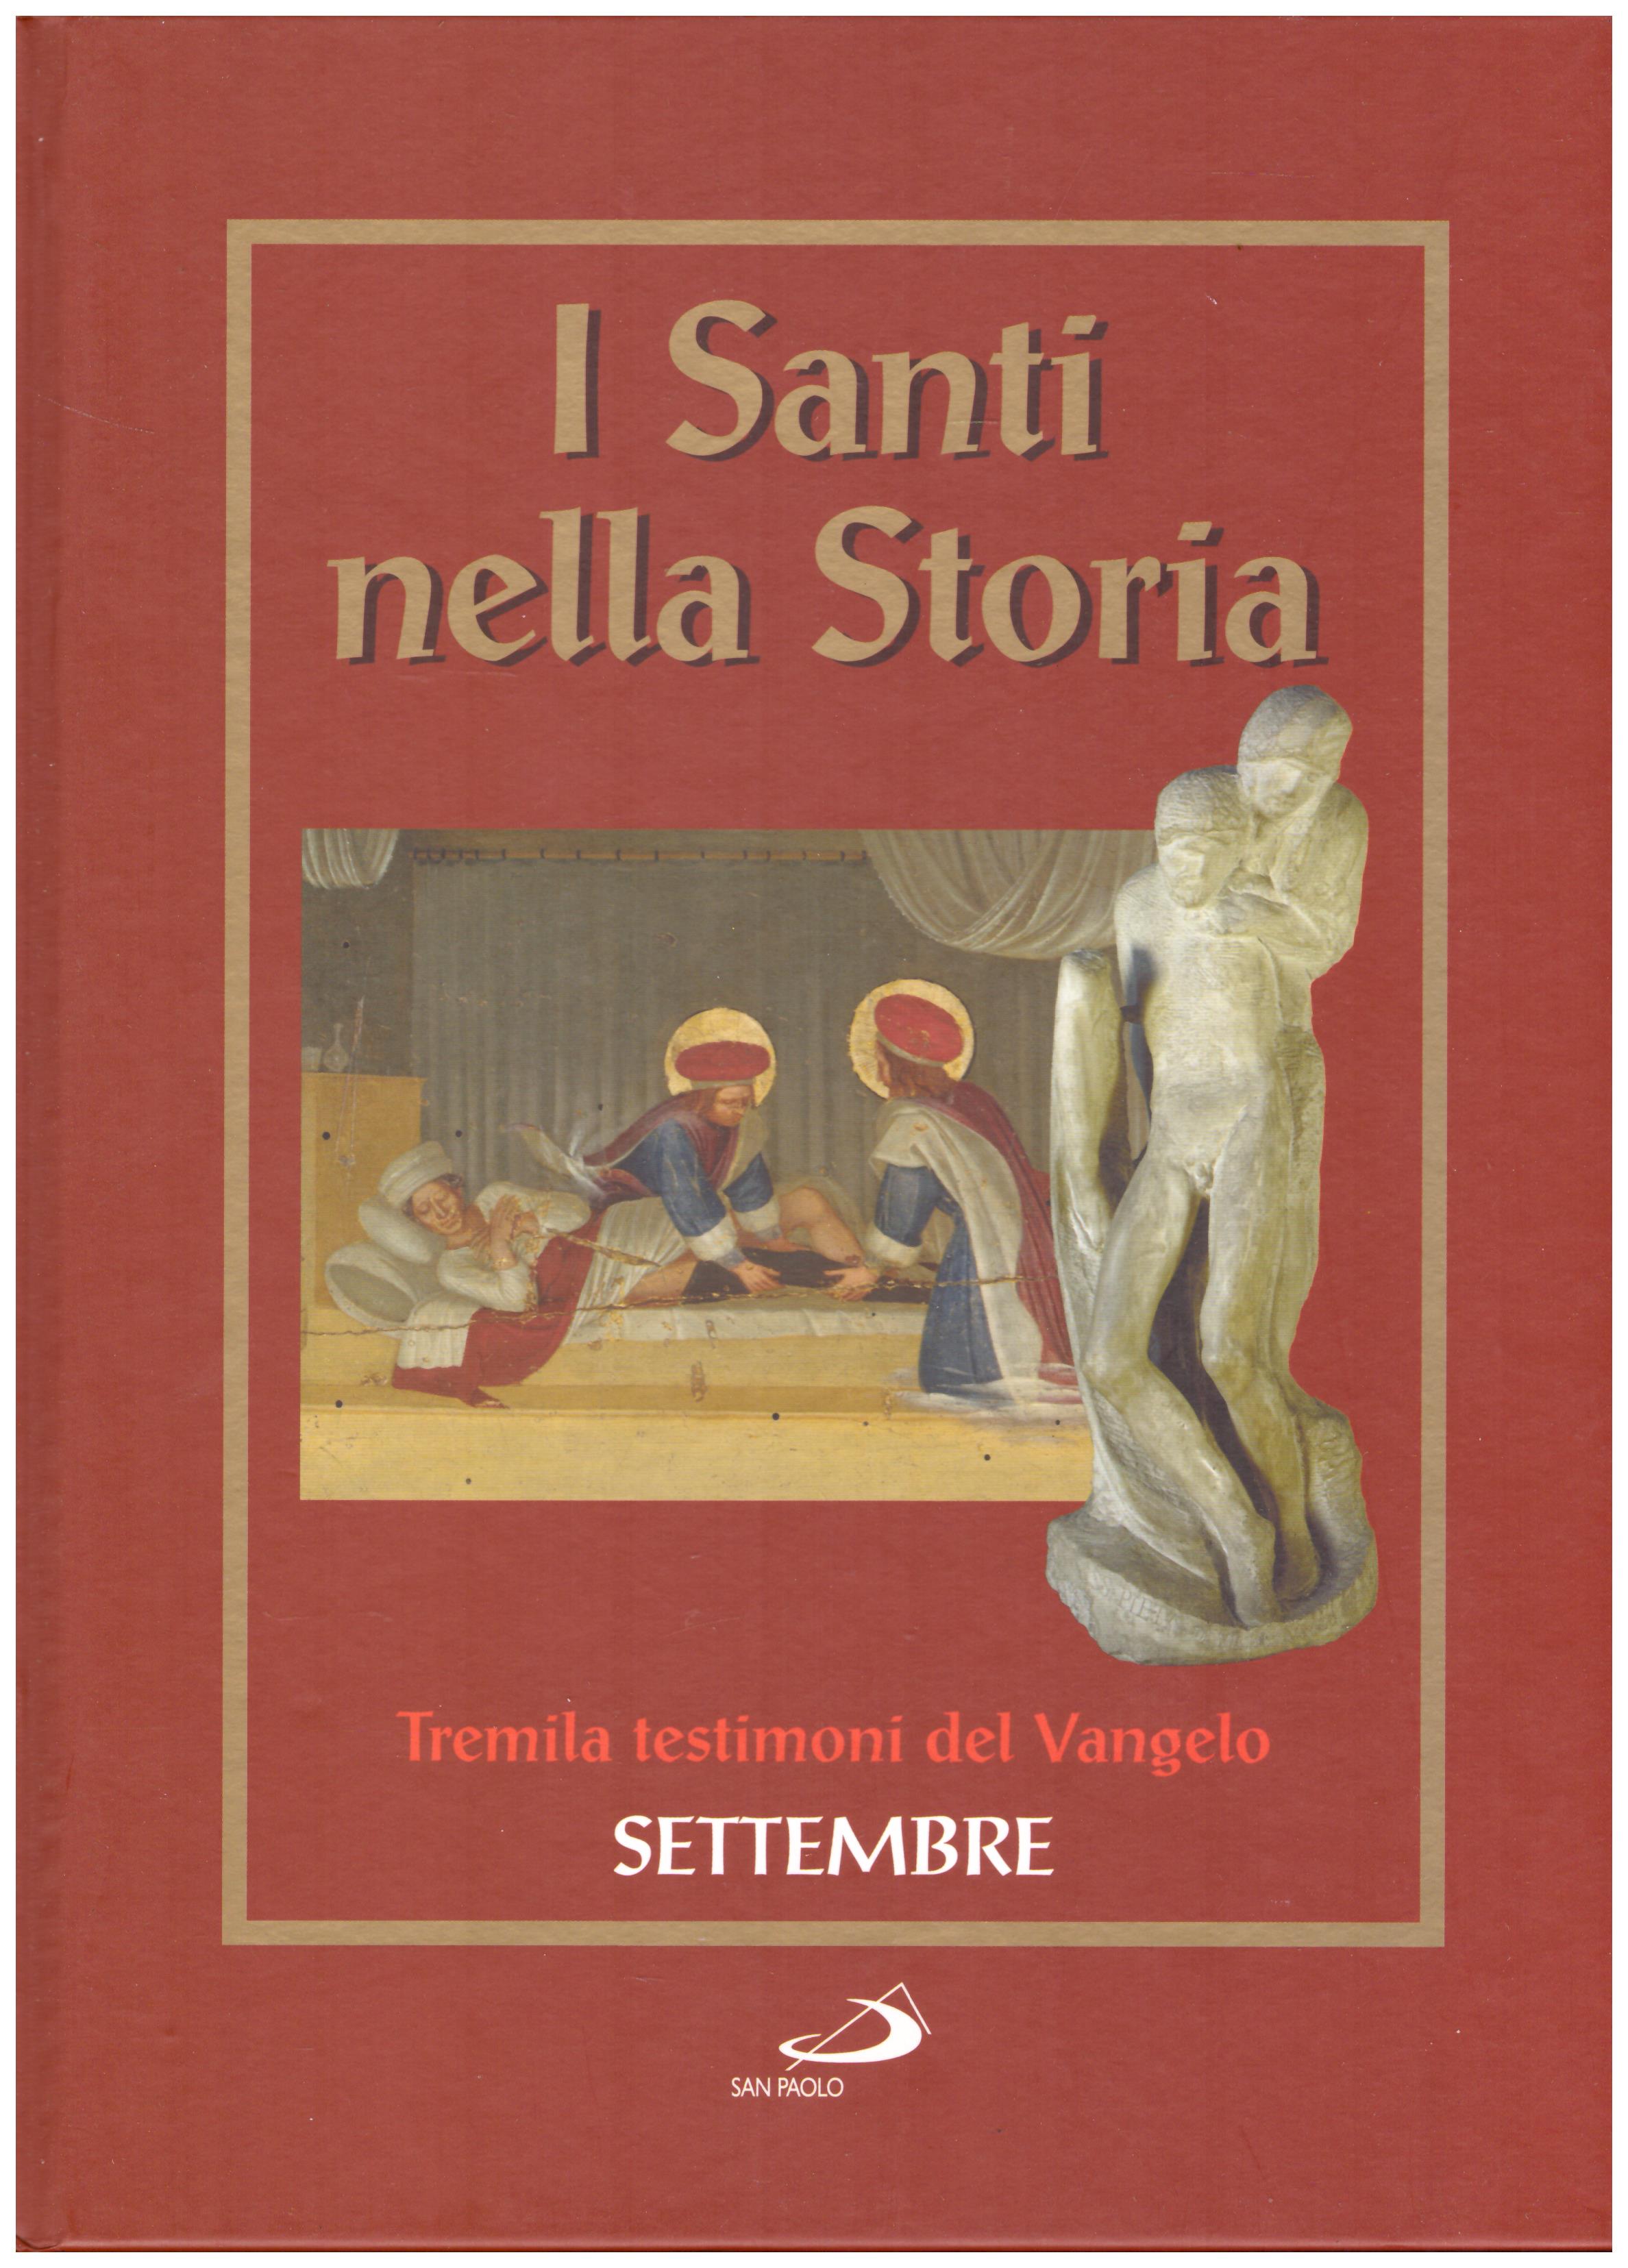 Titolo: I santi nella storia, Settembre Autore: AA.VV.  Editore: San Paolo, 2006